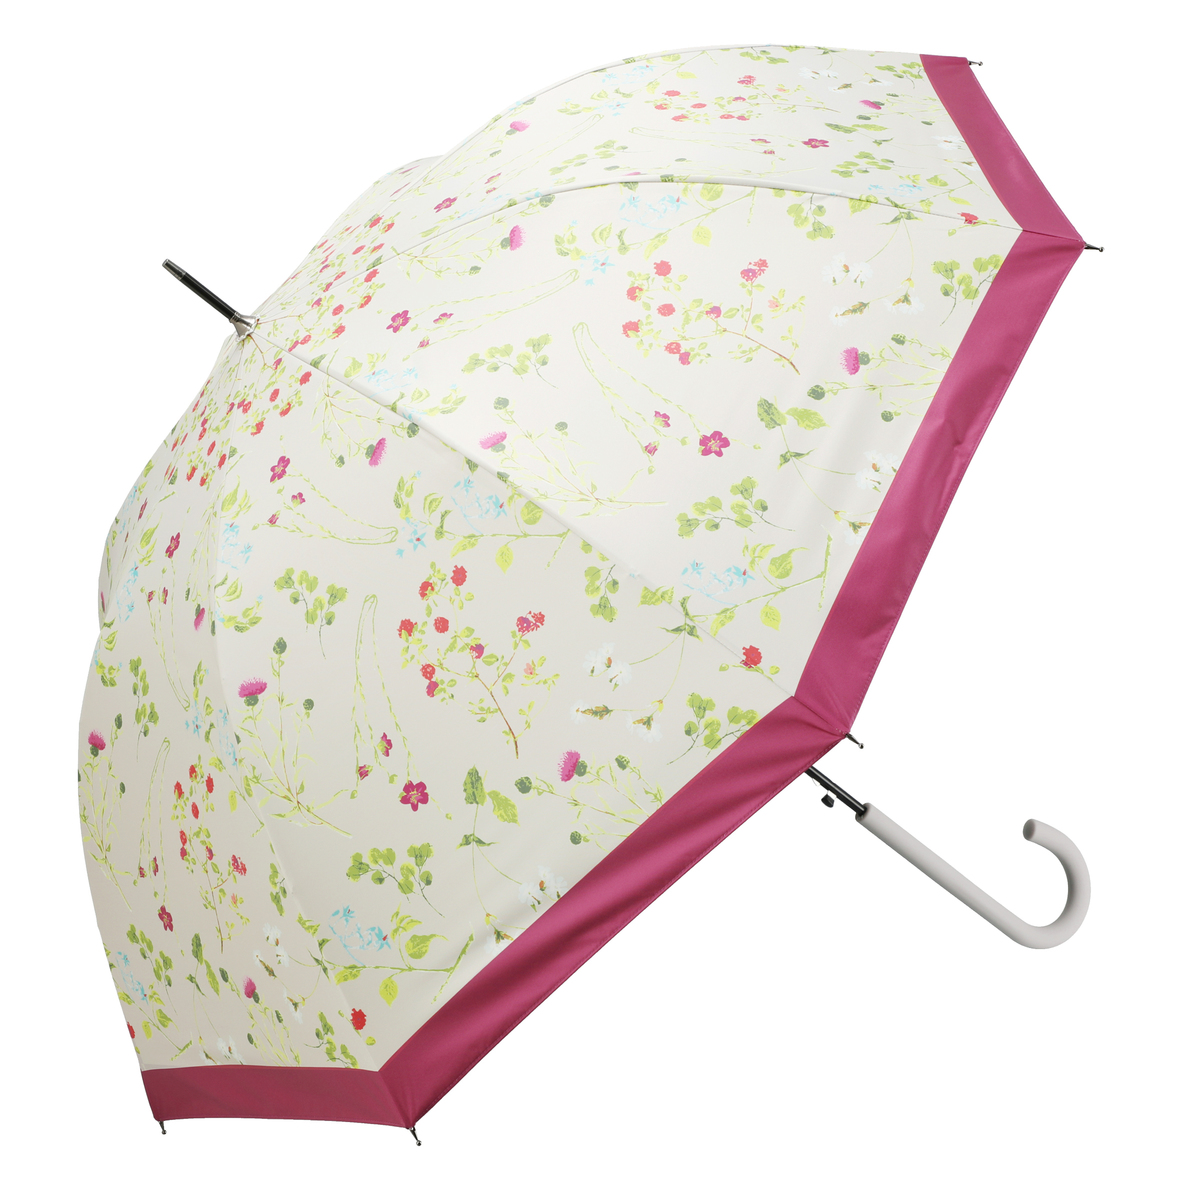  ルナジュメール UV+1級遮光+晴雨兼用ボタニカル柄長傘  ピンク